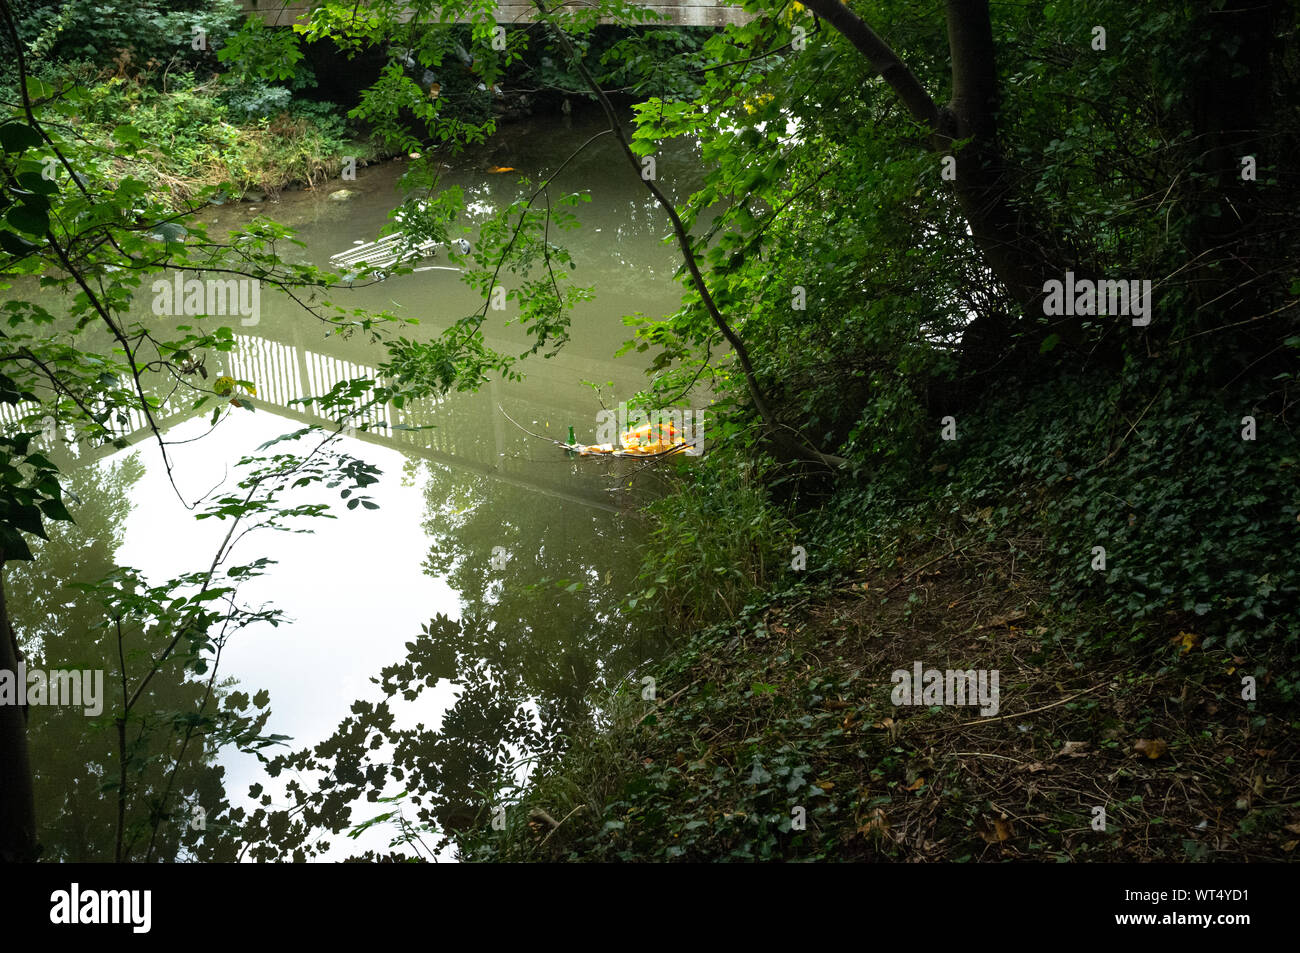 Ein Einkaufswagen und andere Plastikabfälle in einem Buckingham Waterway, wo verschiedene Tierarten leben. Buckinghamshire, England. Stockfoto